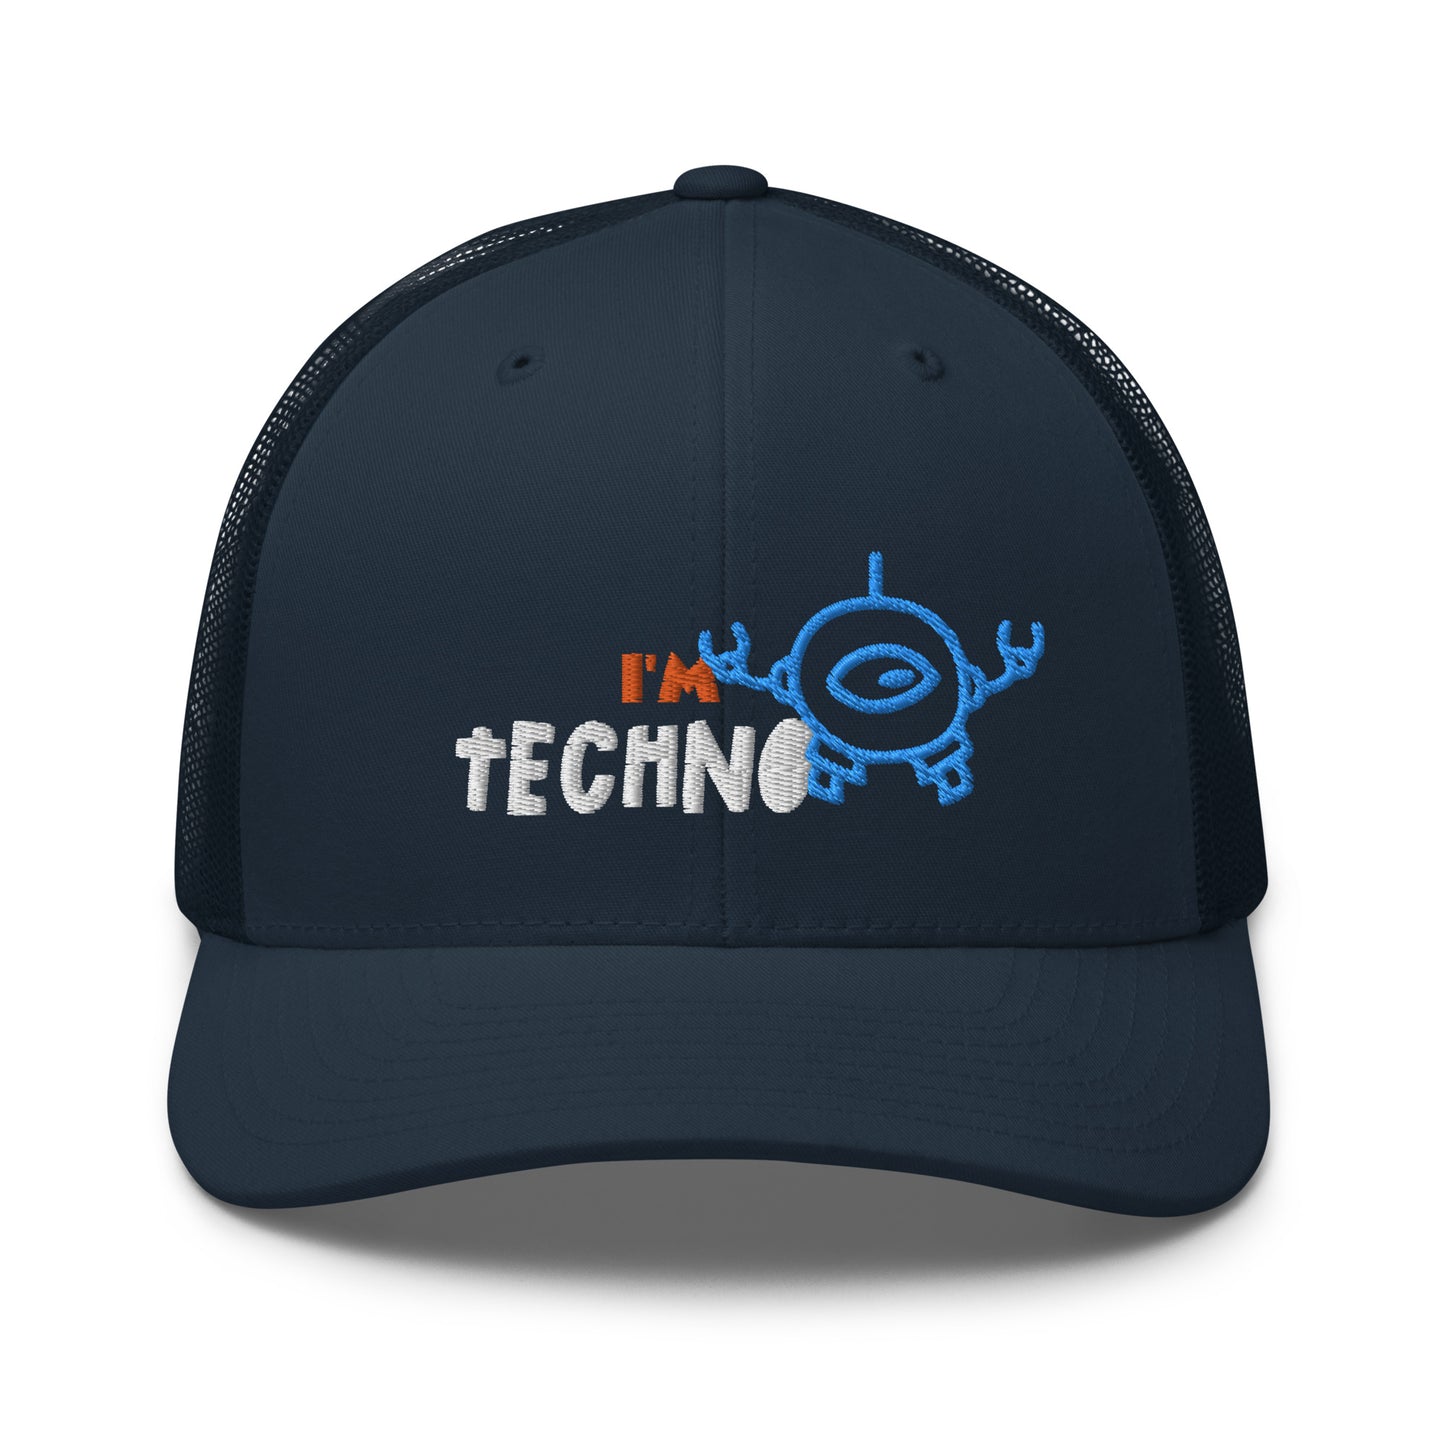 I'M TECHNO - Trucker Cap